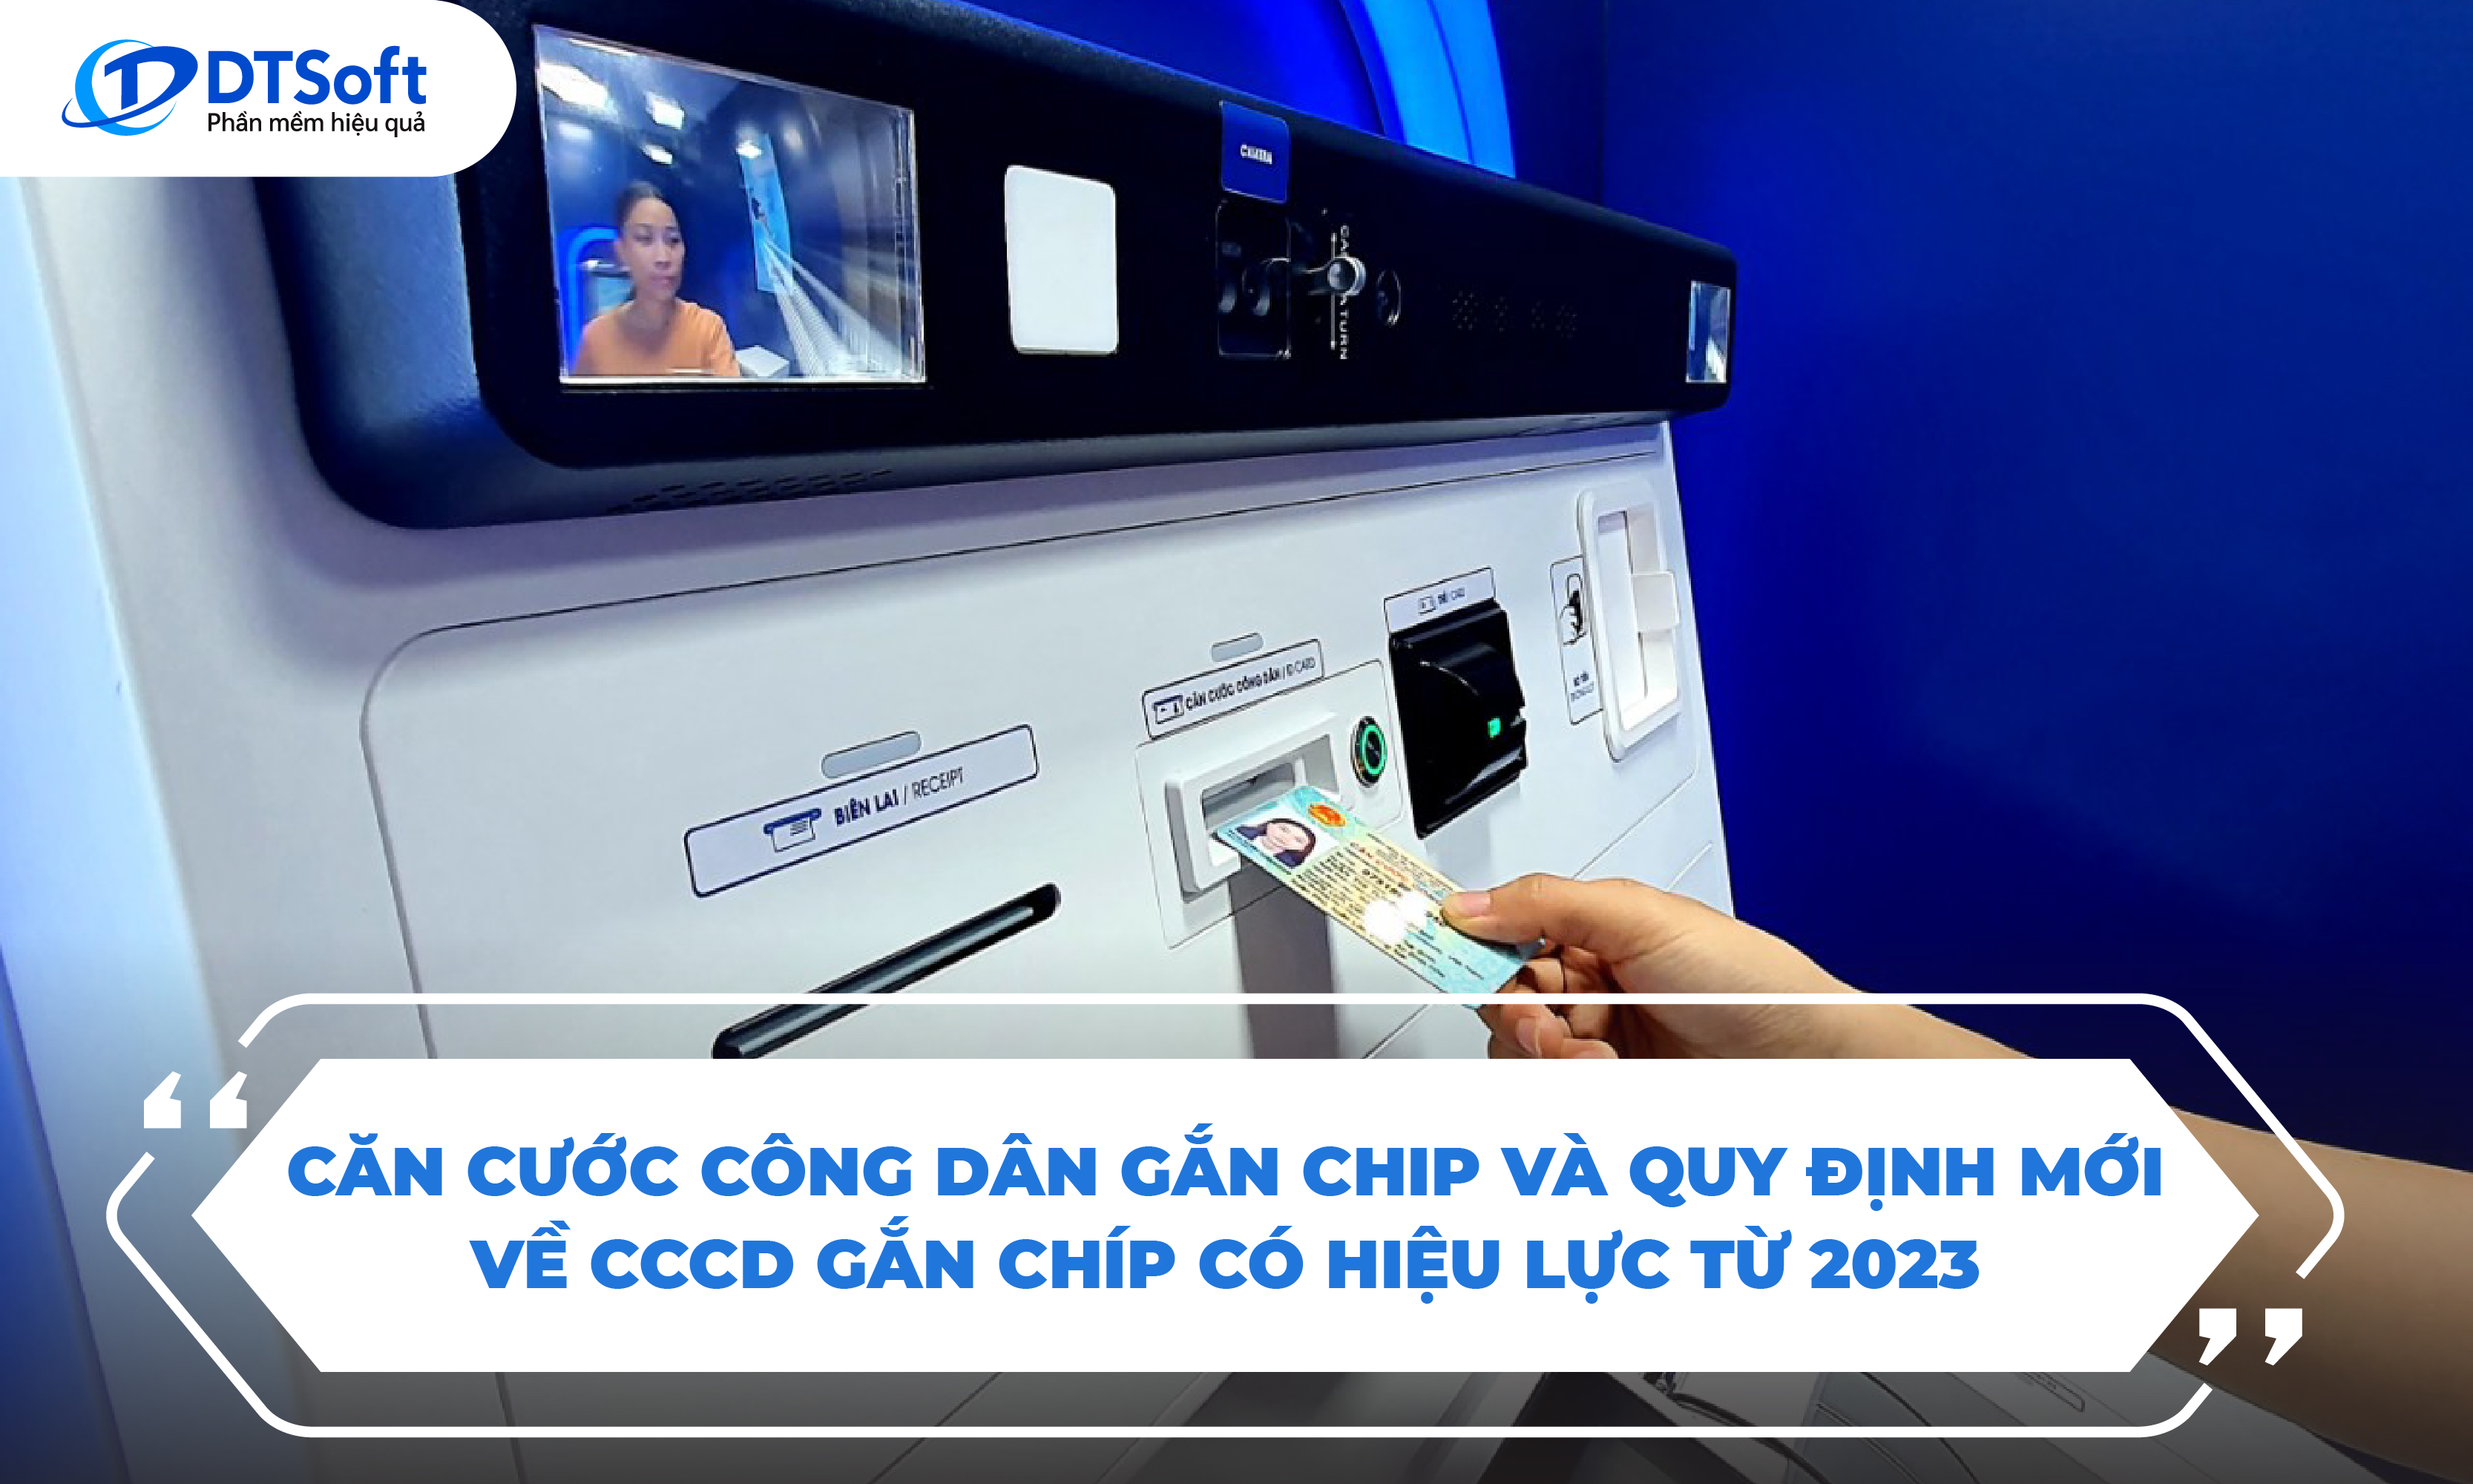 Căn cước công dân gắn chip và quy định mới về CCCD gắn chip có hiệu lực từ 2023